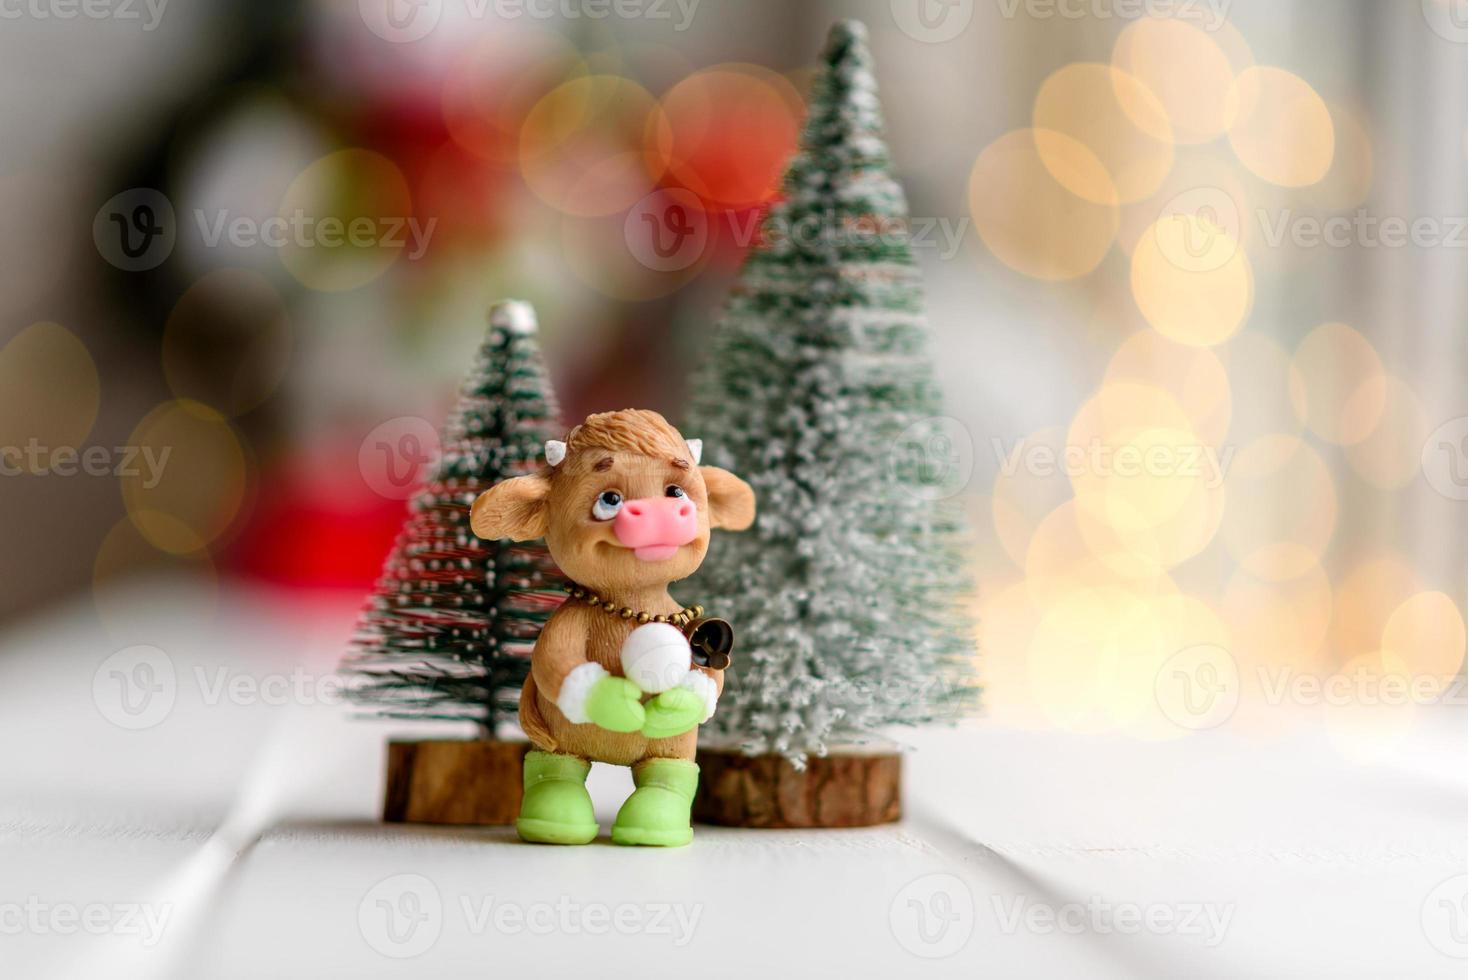 lindas decorações de natal multicoloridas em uma mesa de madeira clara foto